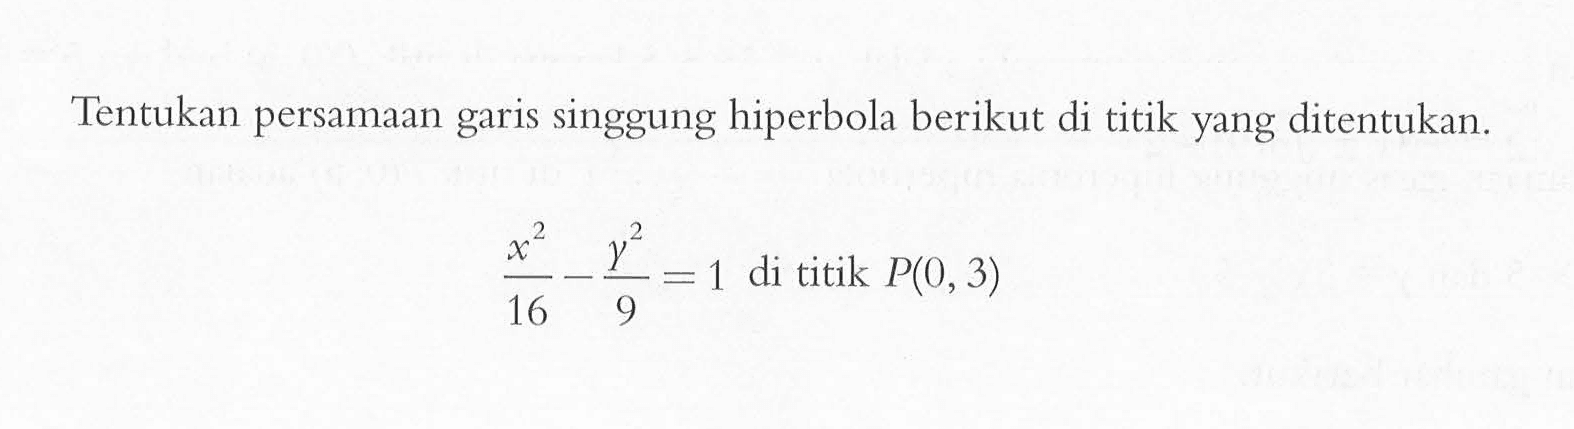 Tentukan persamaan singgung hiperbola berikut di titik yang ditentukan. x^2/16 - y^2/9=1 di titik P(0,3)